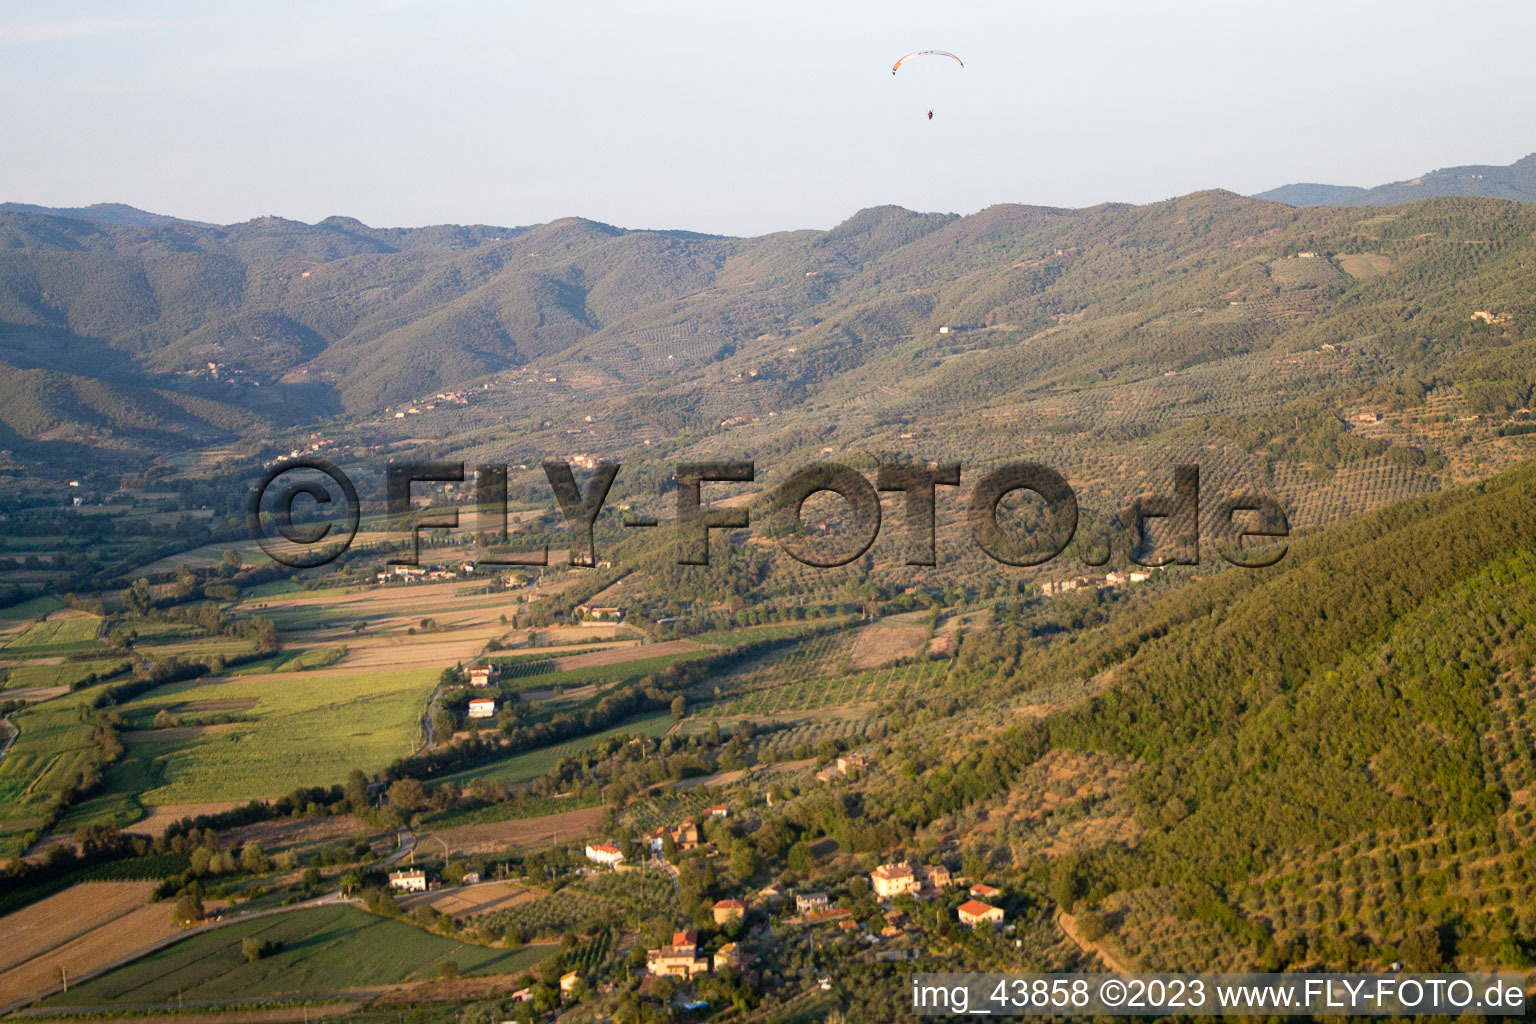 Poggiolo im Bundesland Toscana, Italien aus der Luft betrachtet